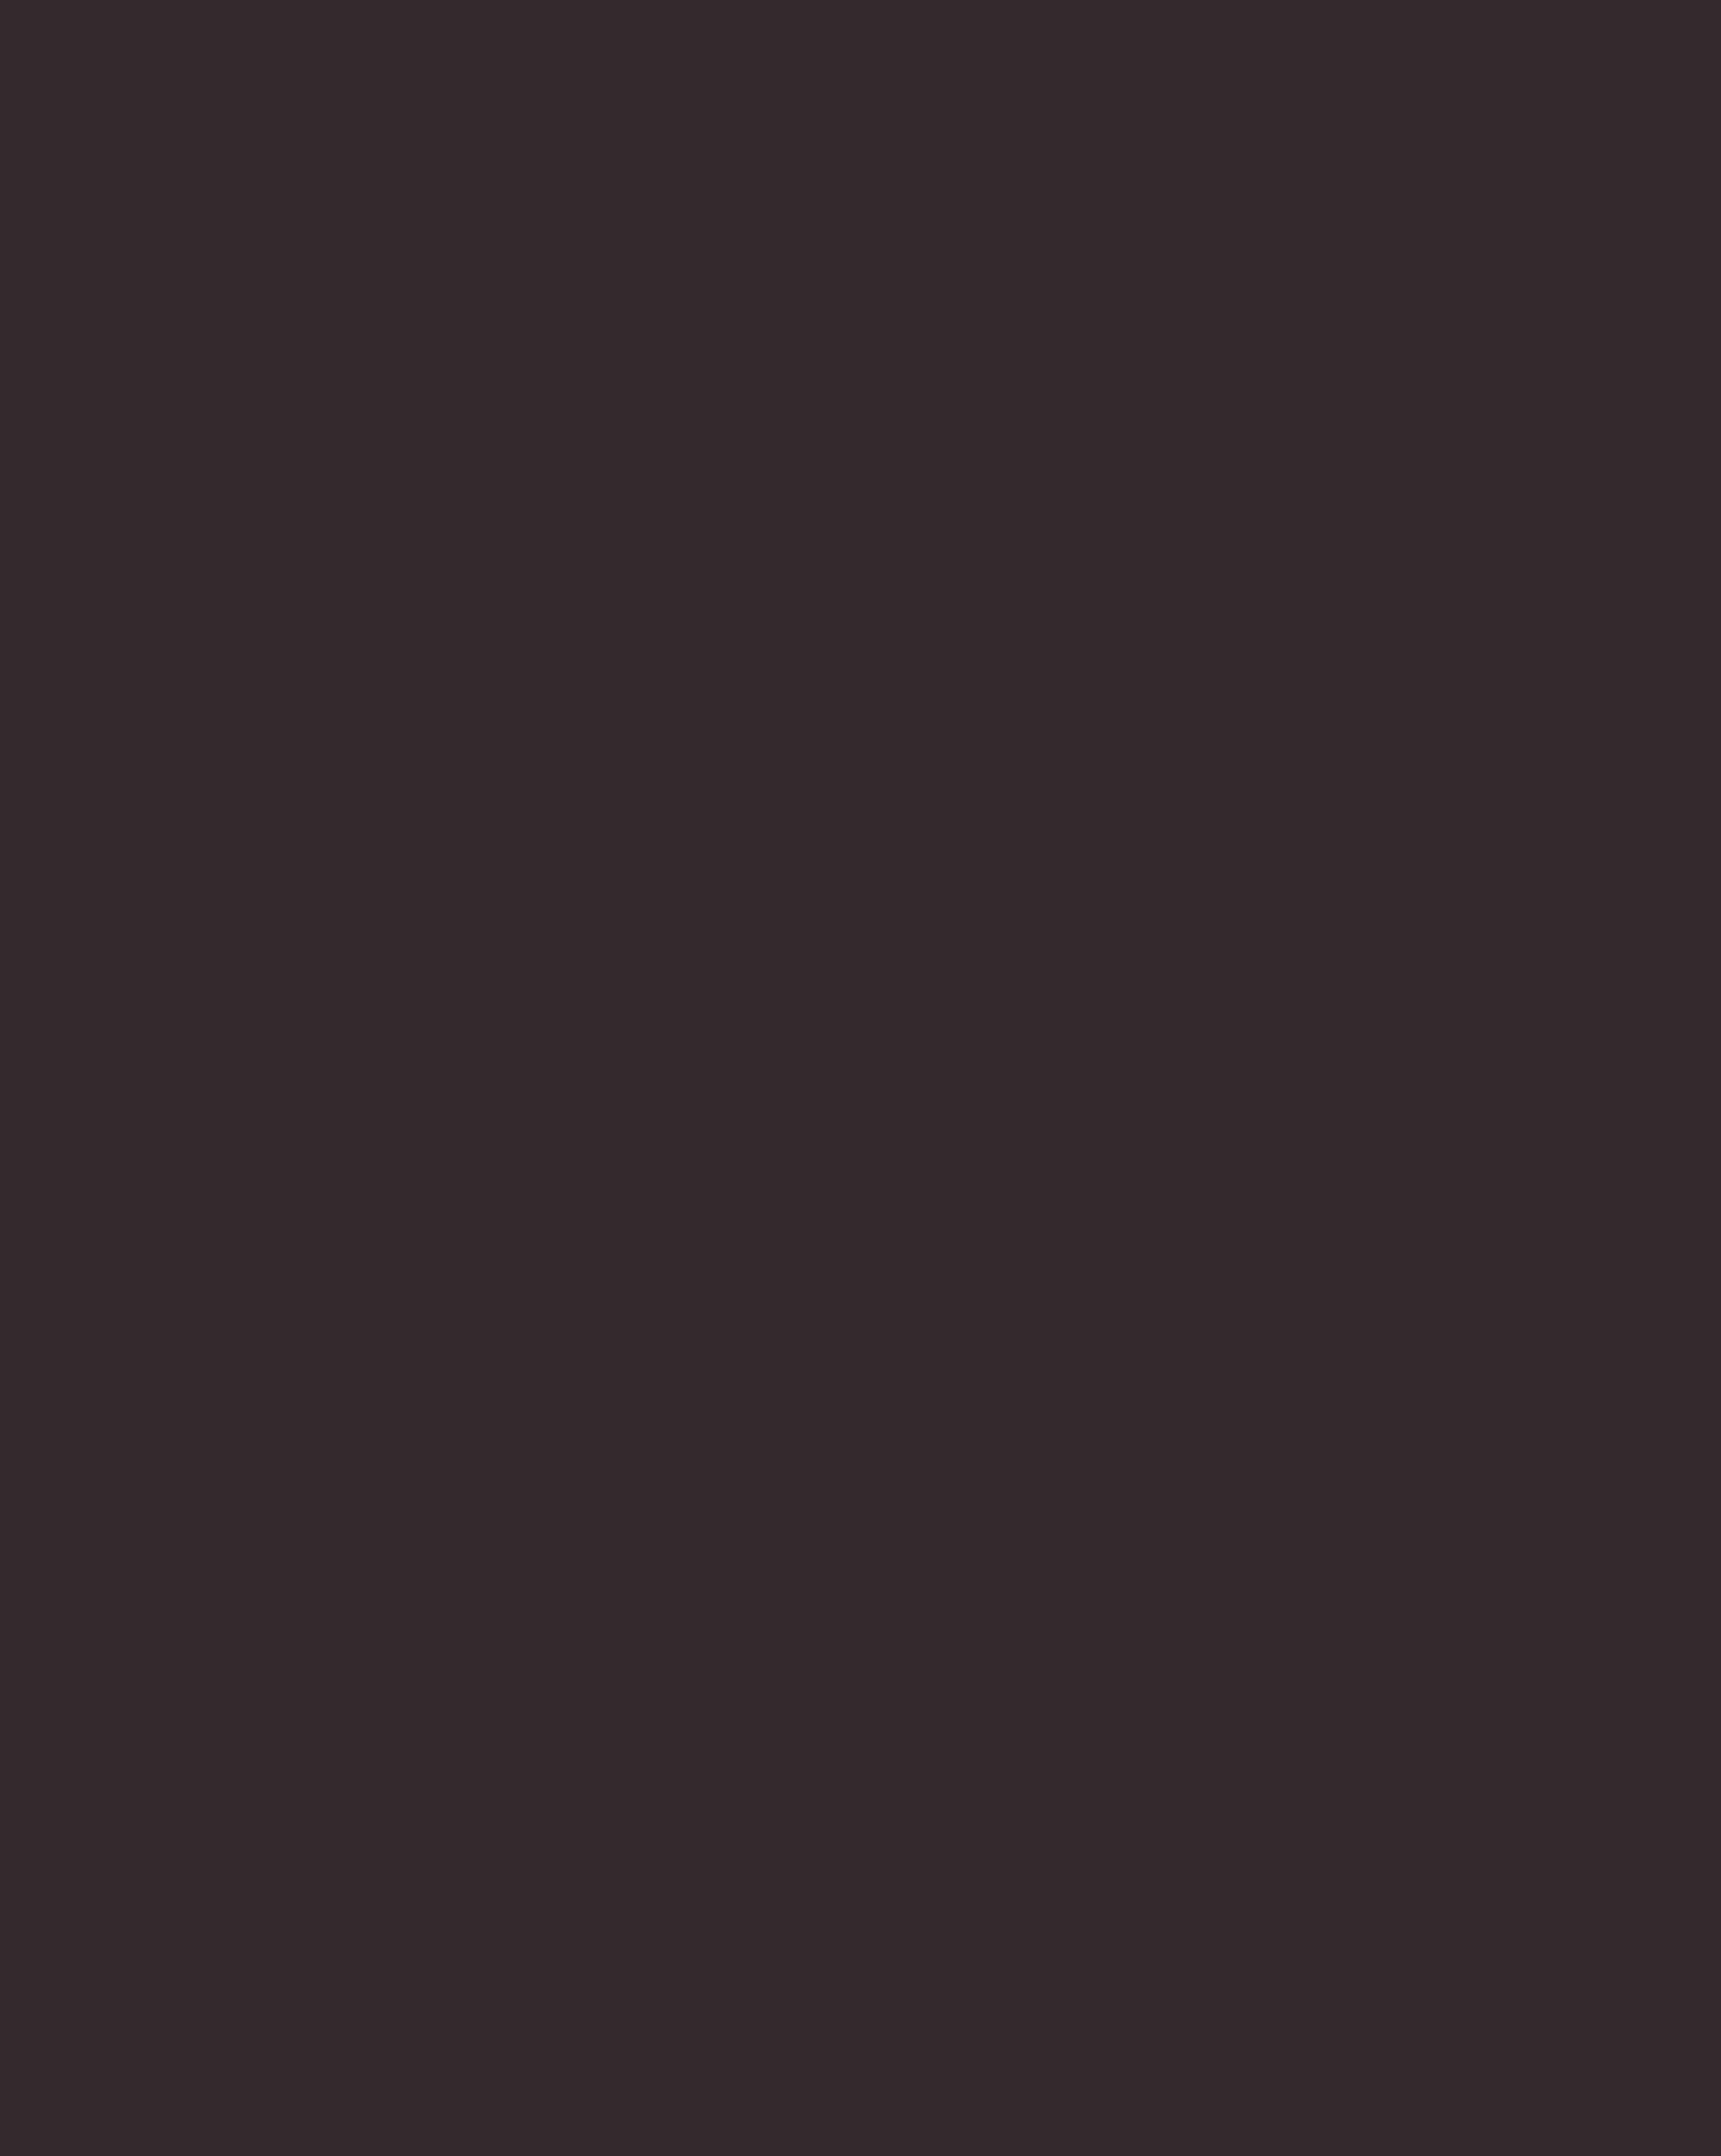 Александр Ширвиндт во время выступления на вечере памяти поэта Евгения Евтушенко в театре имени Вл. Маяковского. Москва, 2017 год. Фотография: Вячеслав Прокофьев / ТАСС